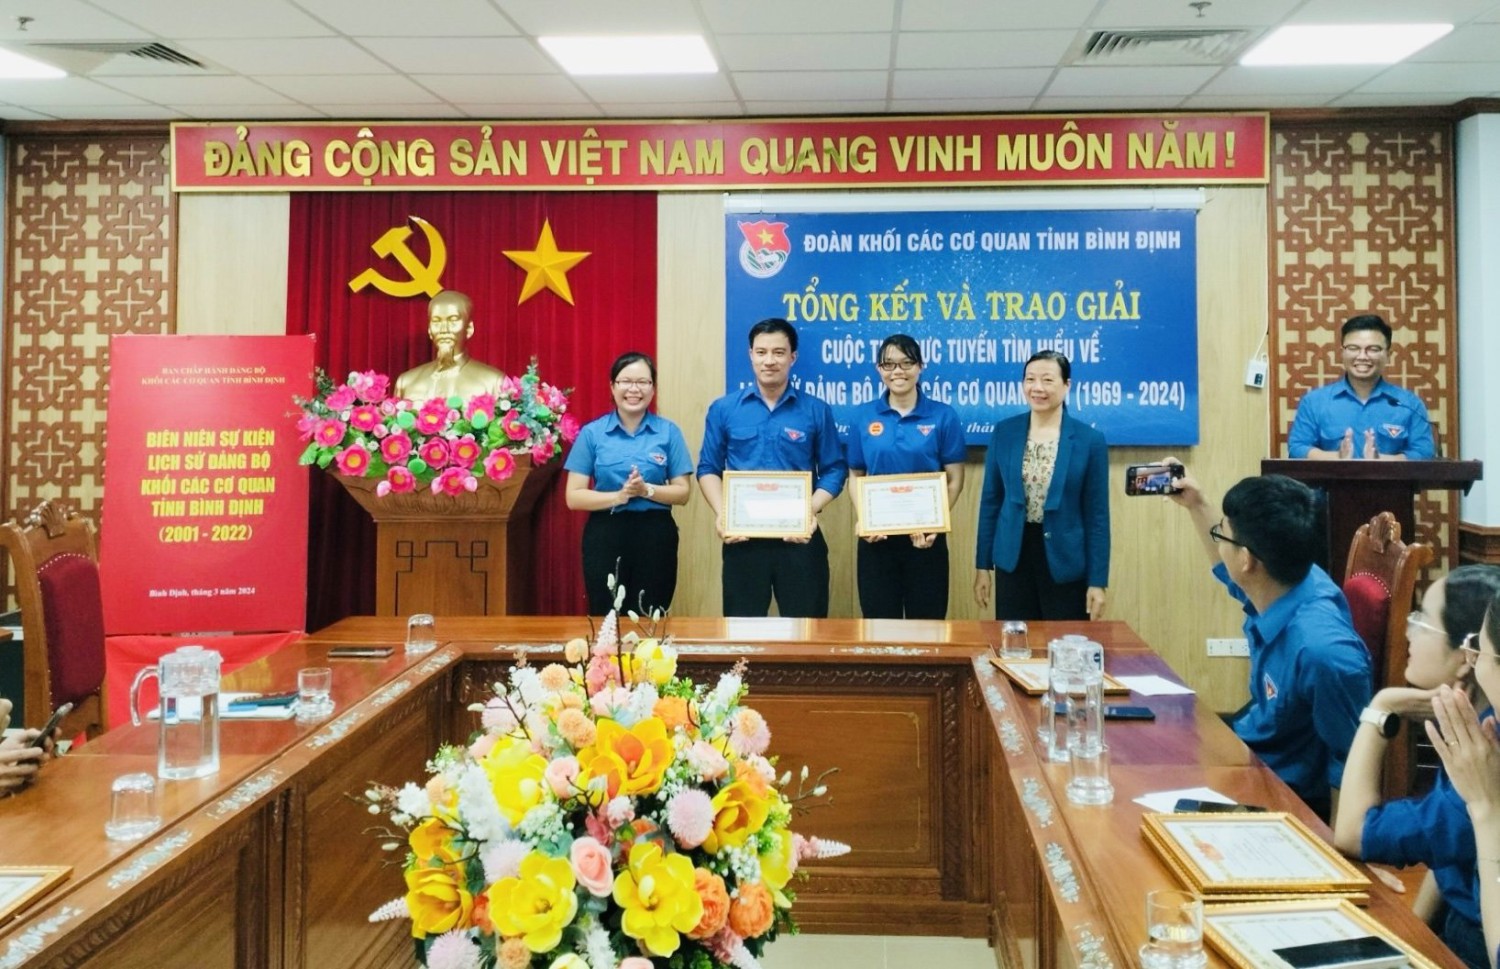 Đ/c Nguyễn Lệ Thủy và đ/c Nguyễn Thị Hoa Mận trao giải Nhất  cho 02 thí sinh xuất sắc nhất của 2 tuần thi